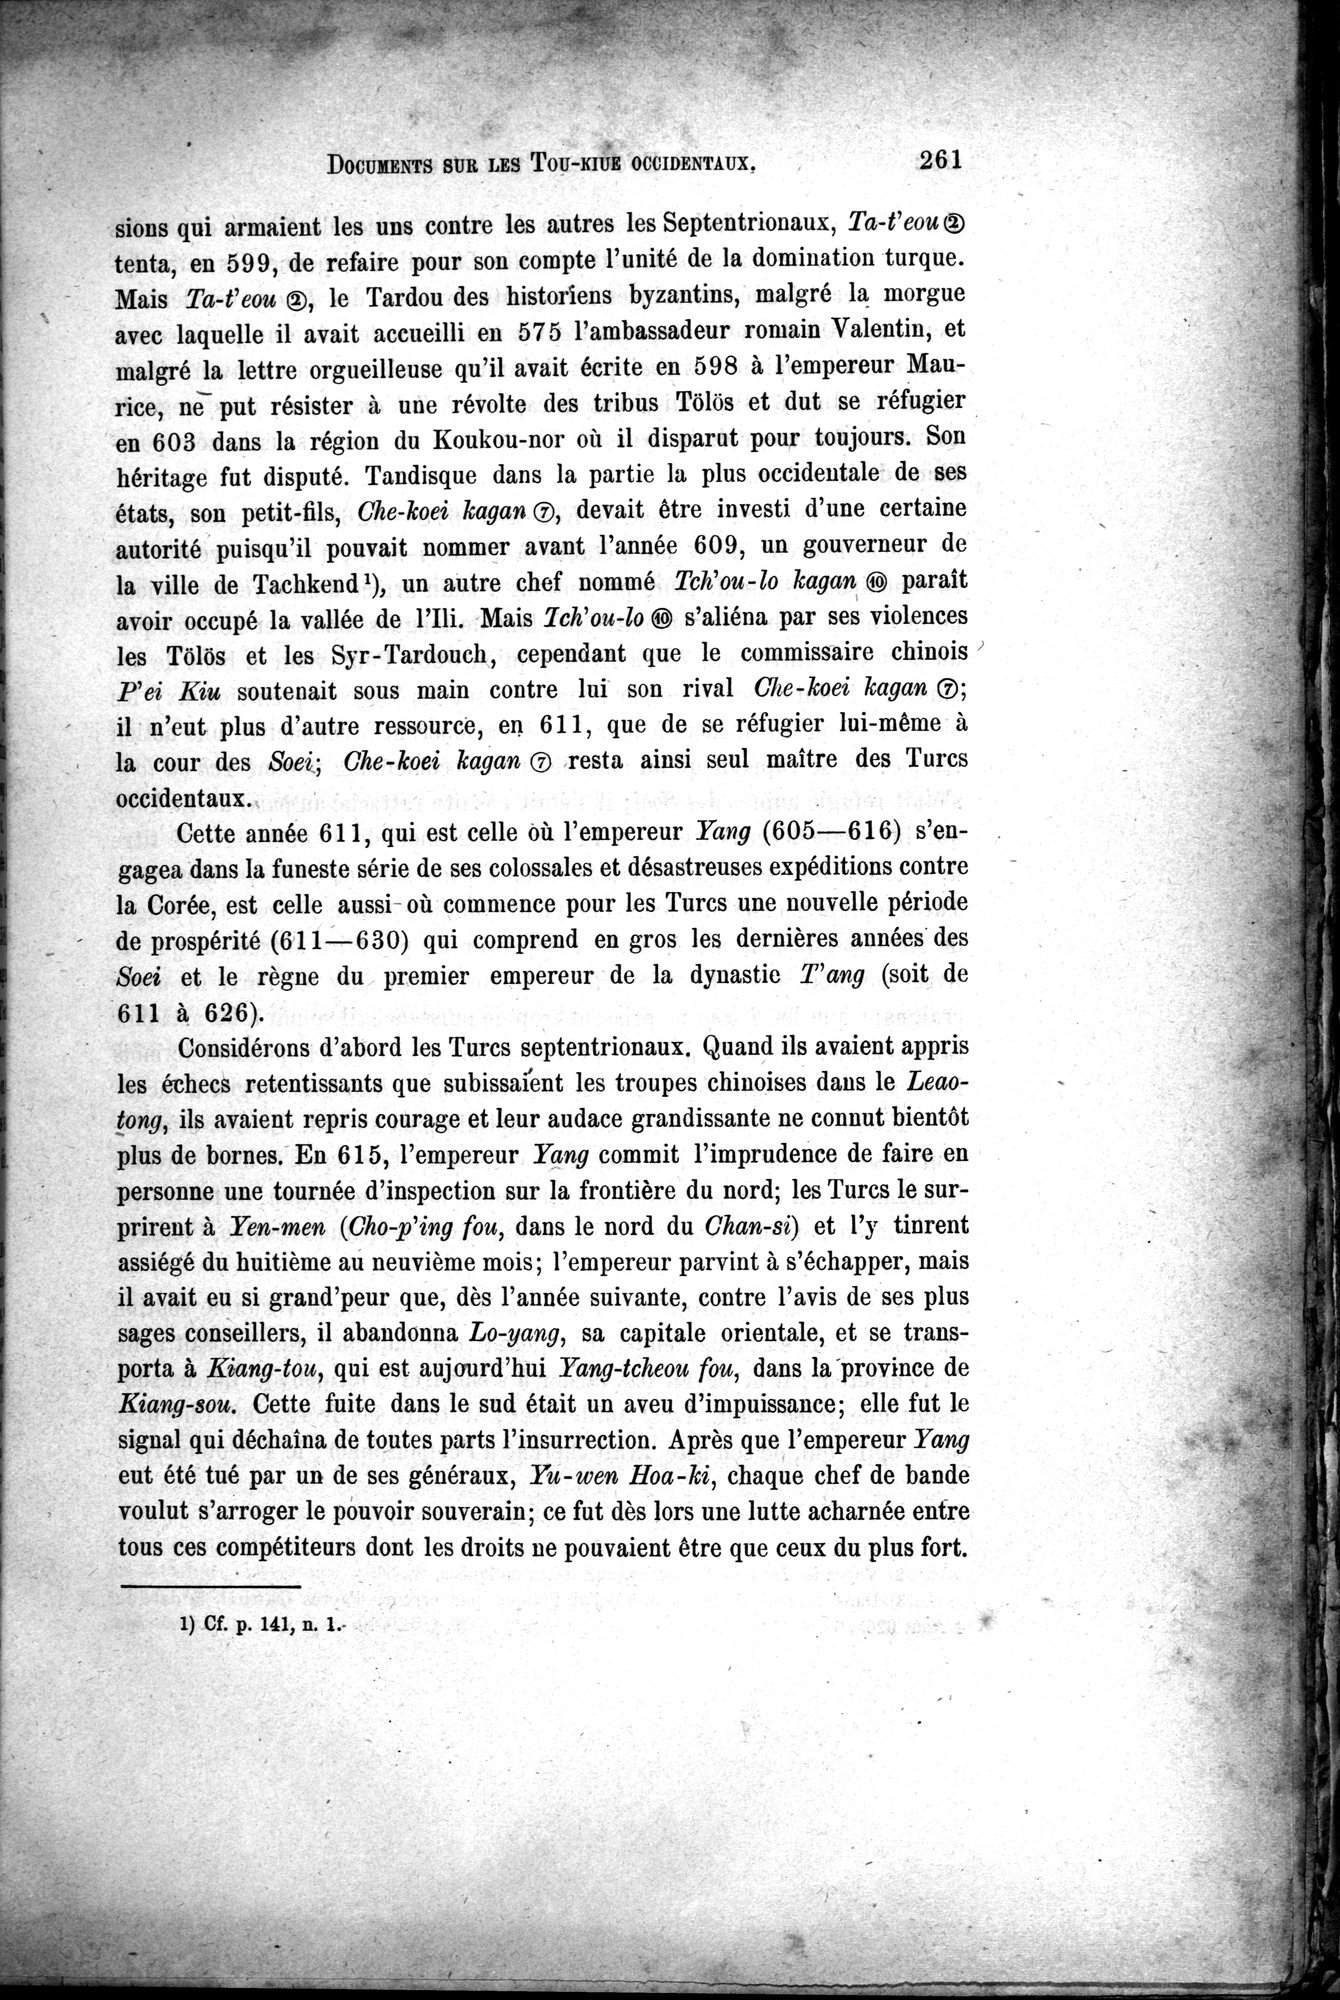 Documents sur les Tou-kiue (Turcs) occidentaux : vol.1 / Page 271 (Grayscale High Resolution Image)